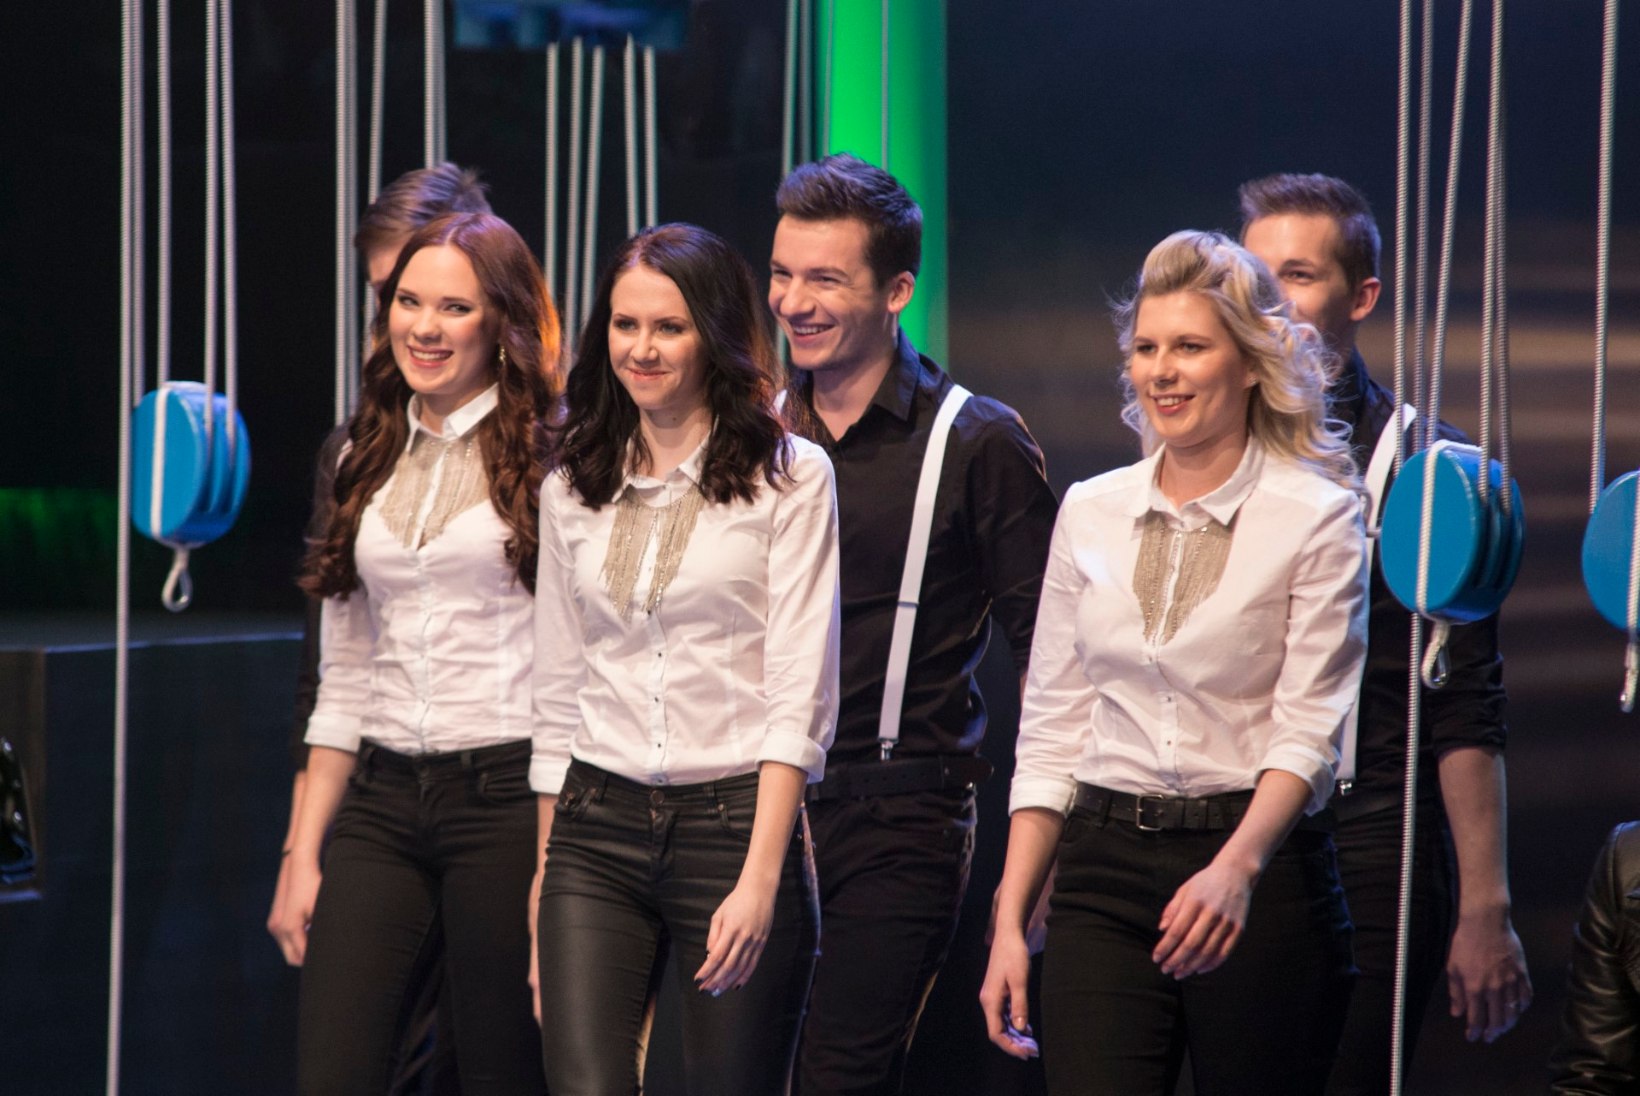 VIDEO: The Blurry Lane'i "Eesti Laul 2015" võistluslugu sai uued humoorikad sõnad